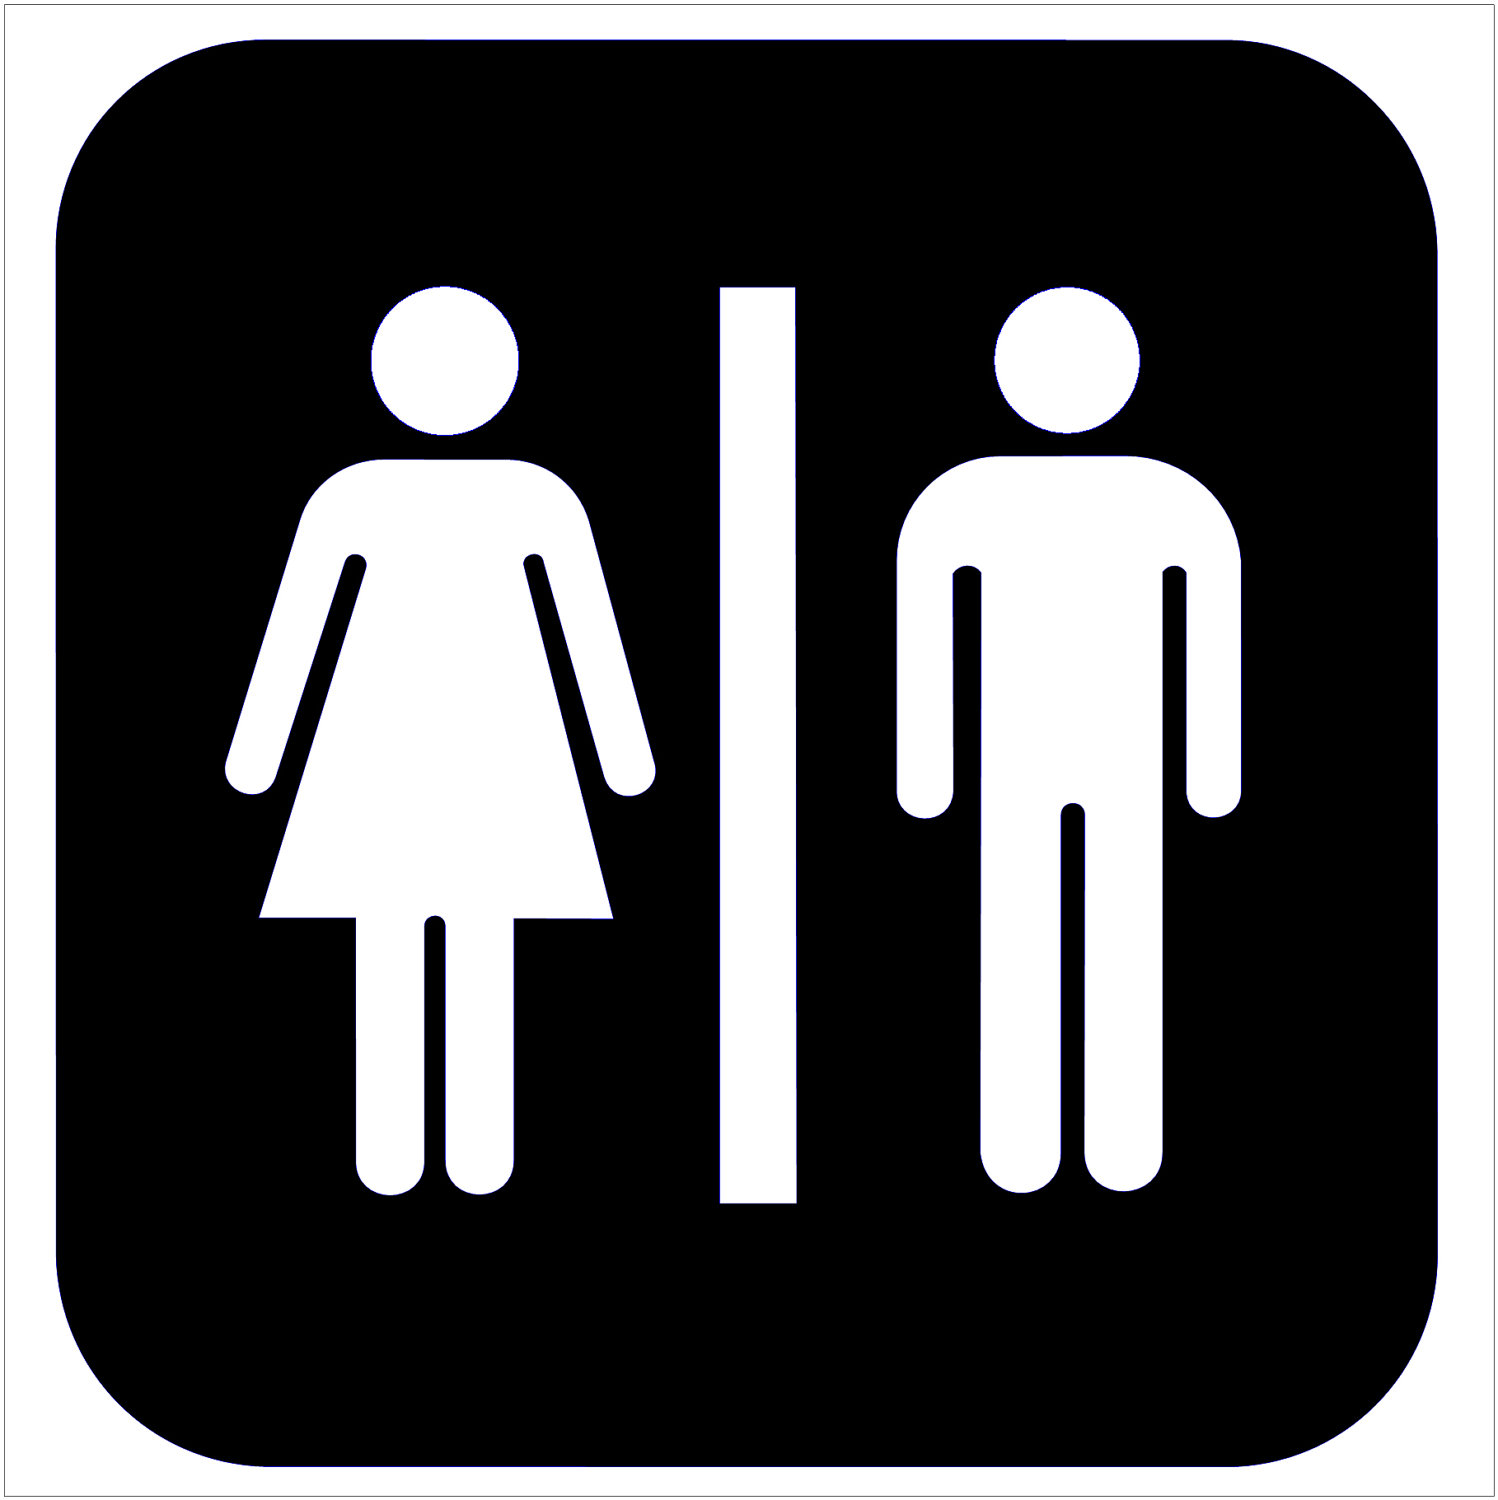 Bathroom Signs | eledzeppelin.com